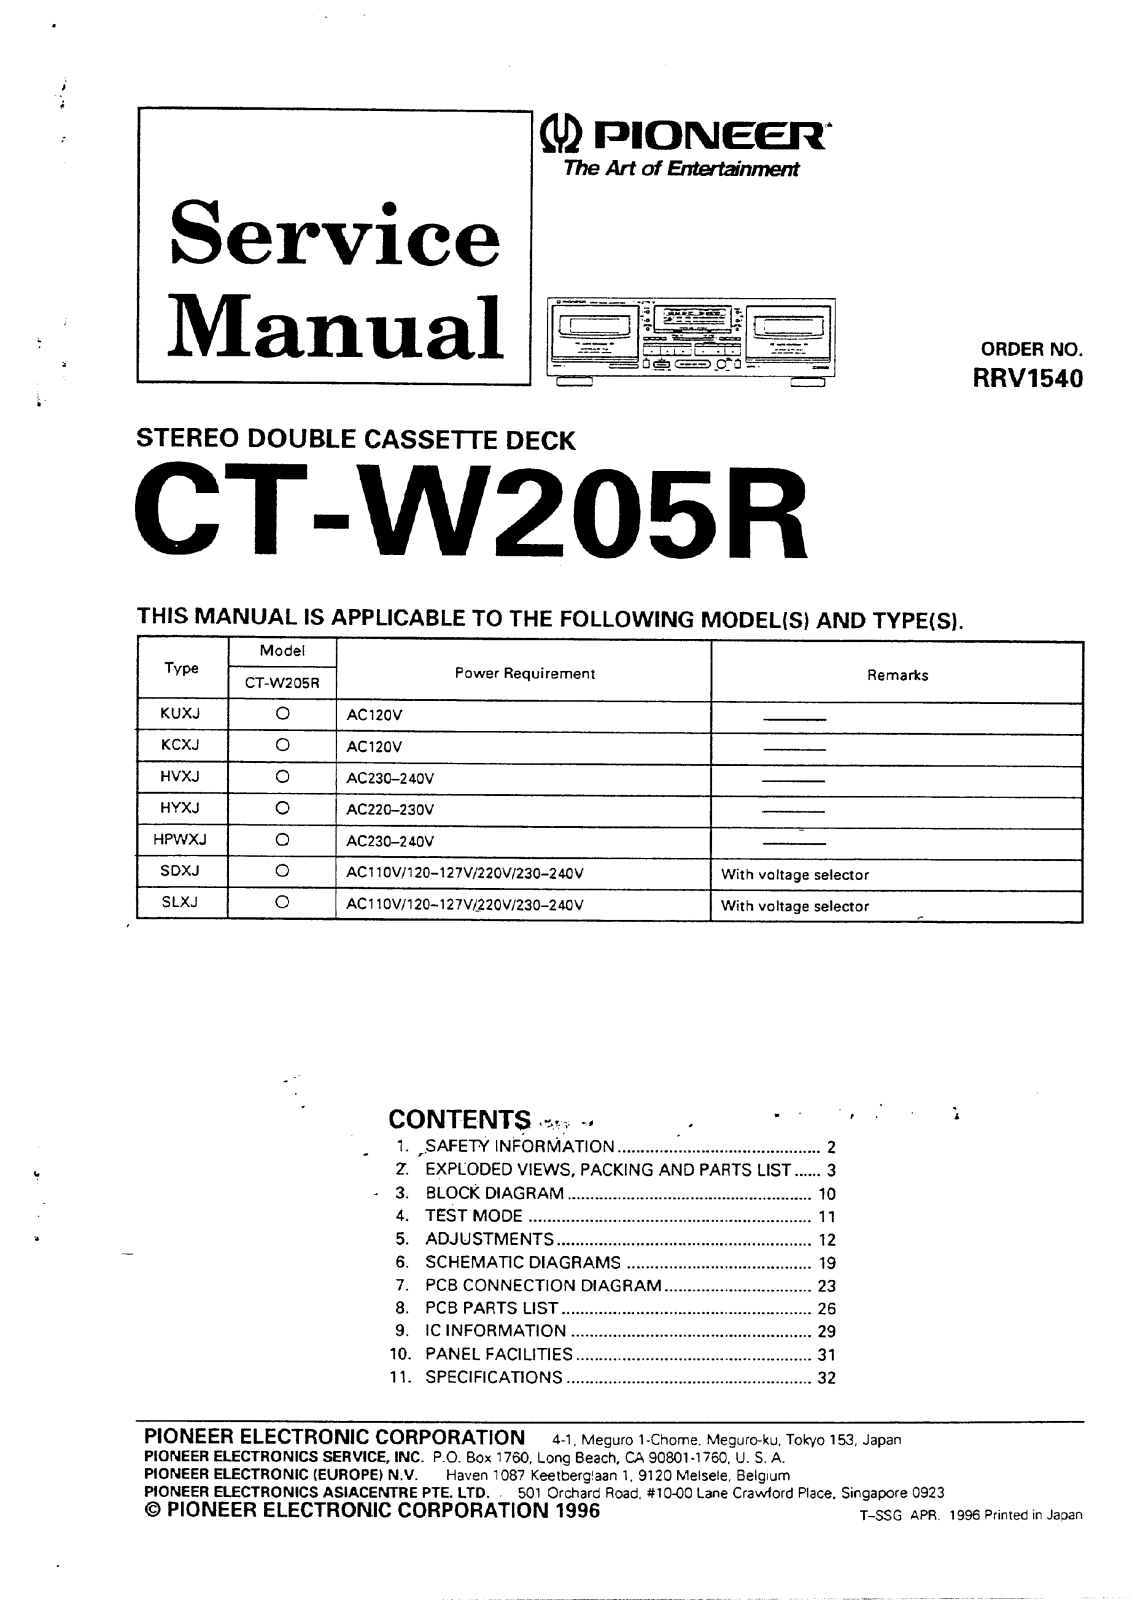 Pioneer CT-W205R Manual